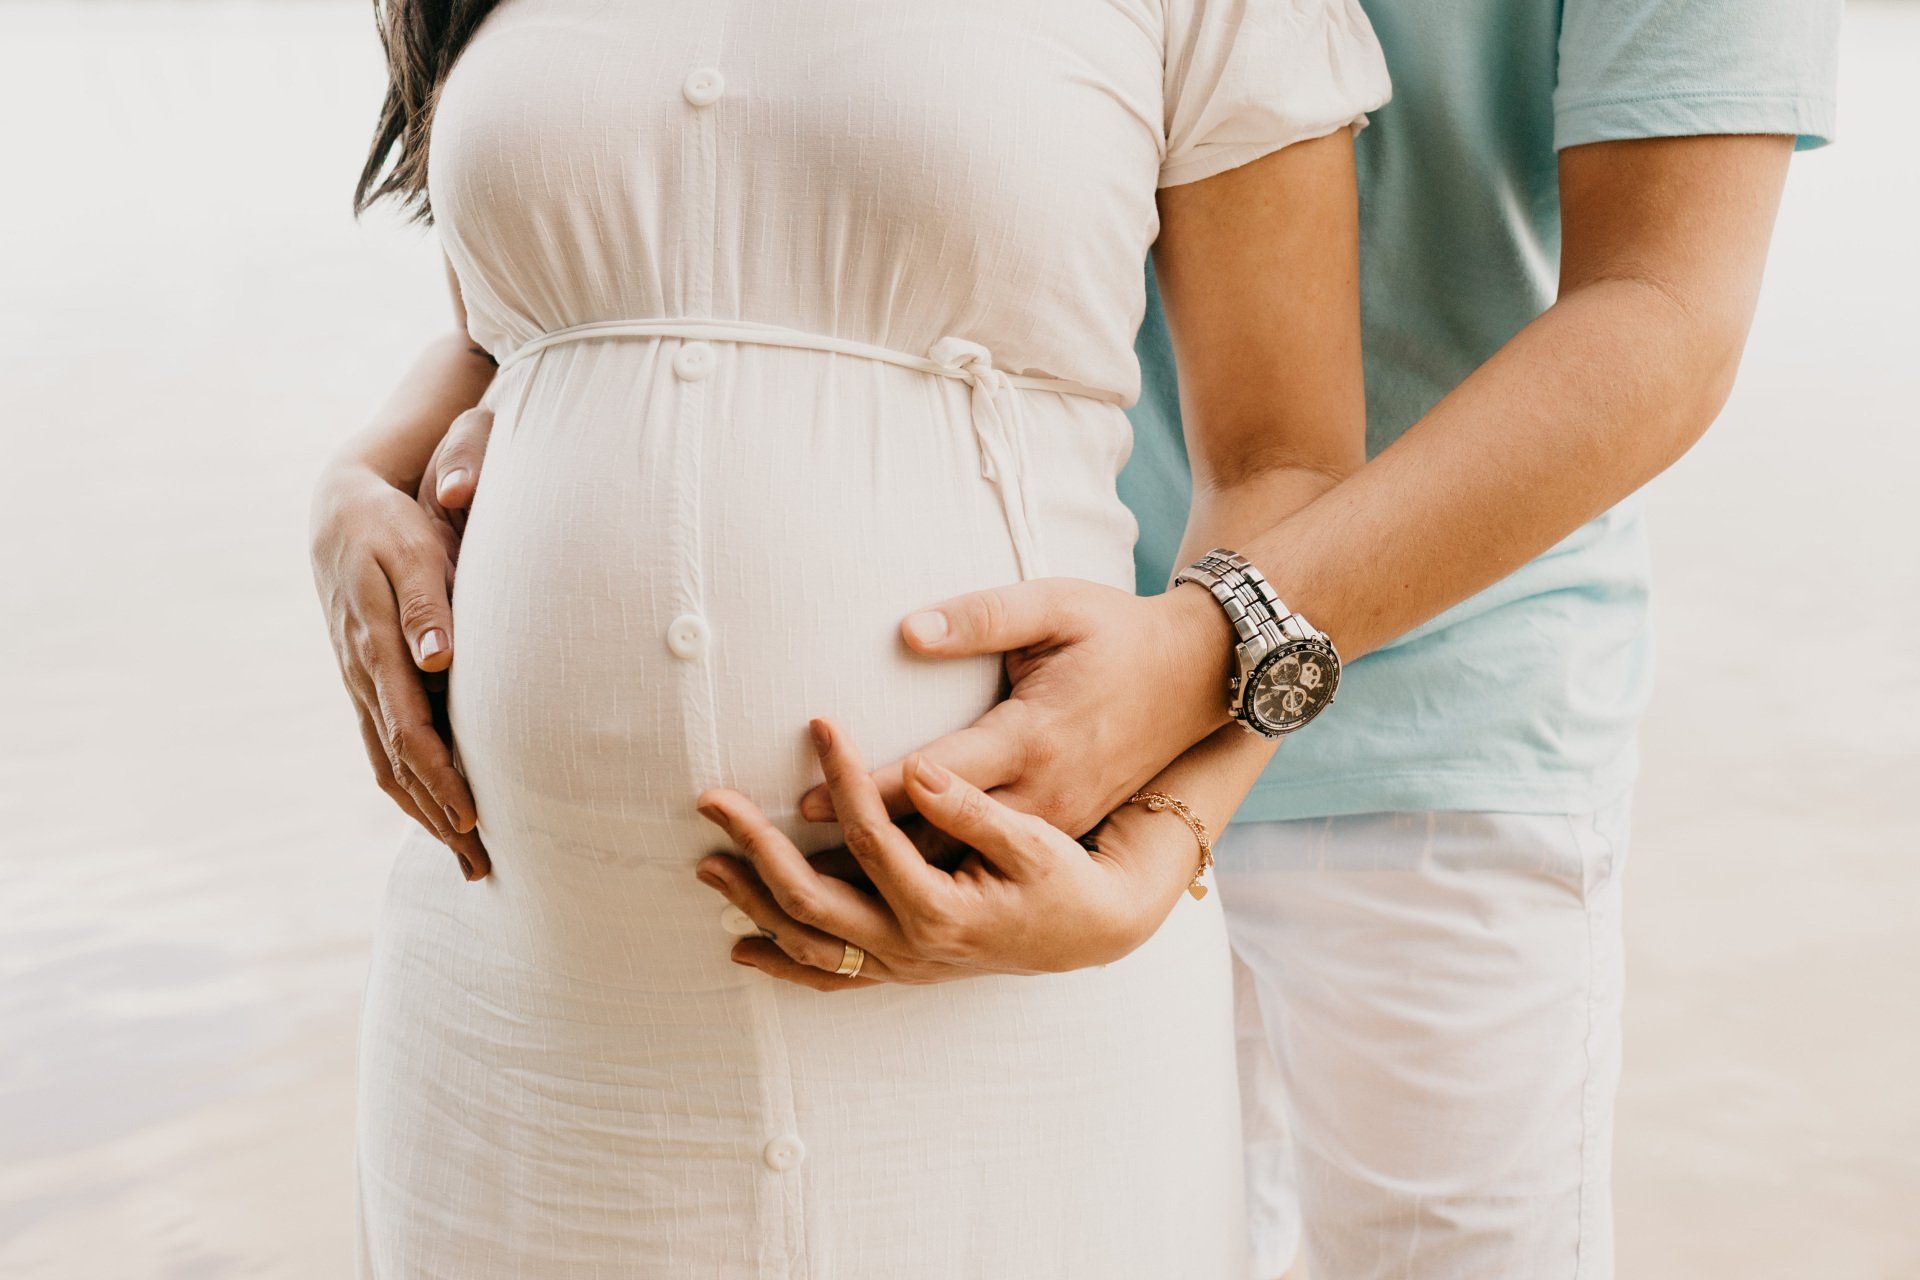 Fødselsforberedelse, hjælp og vejledning til kommende fødsel